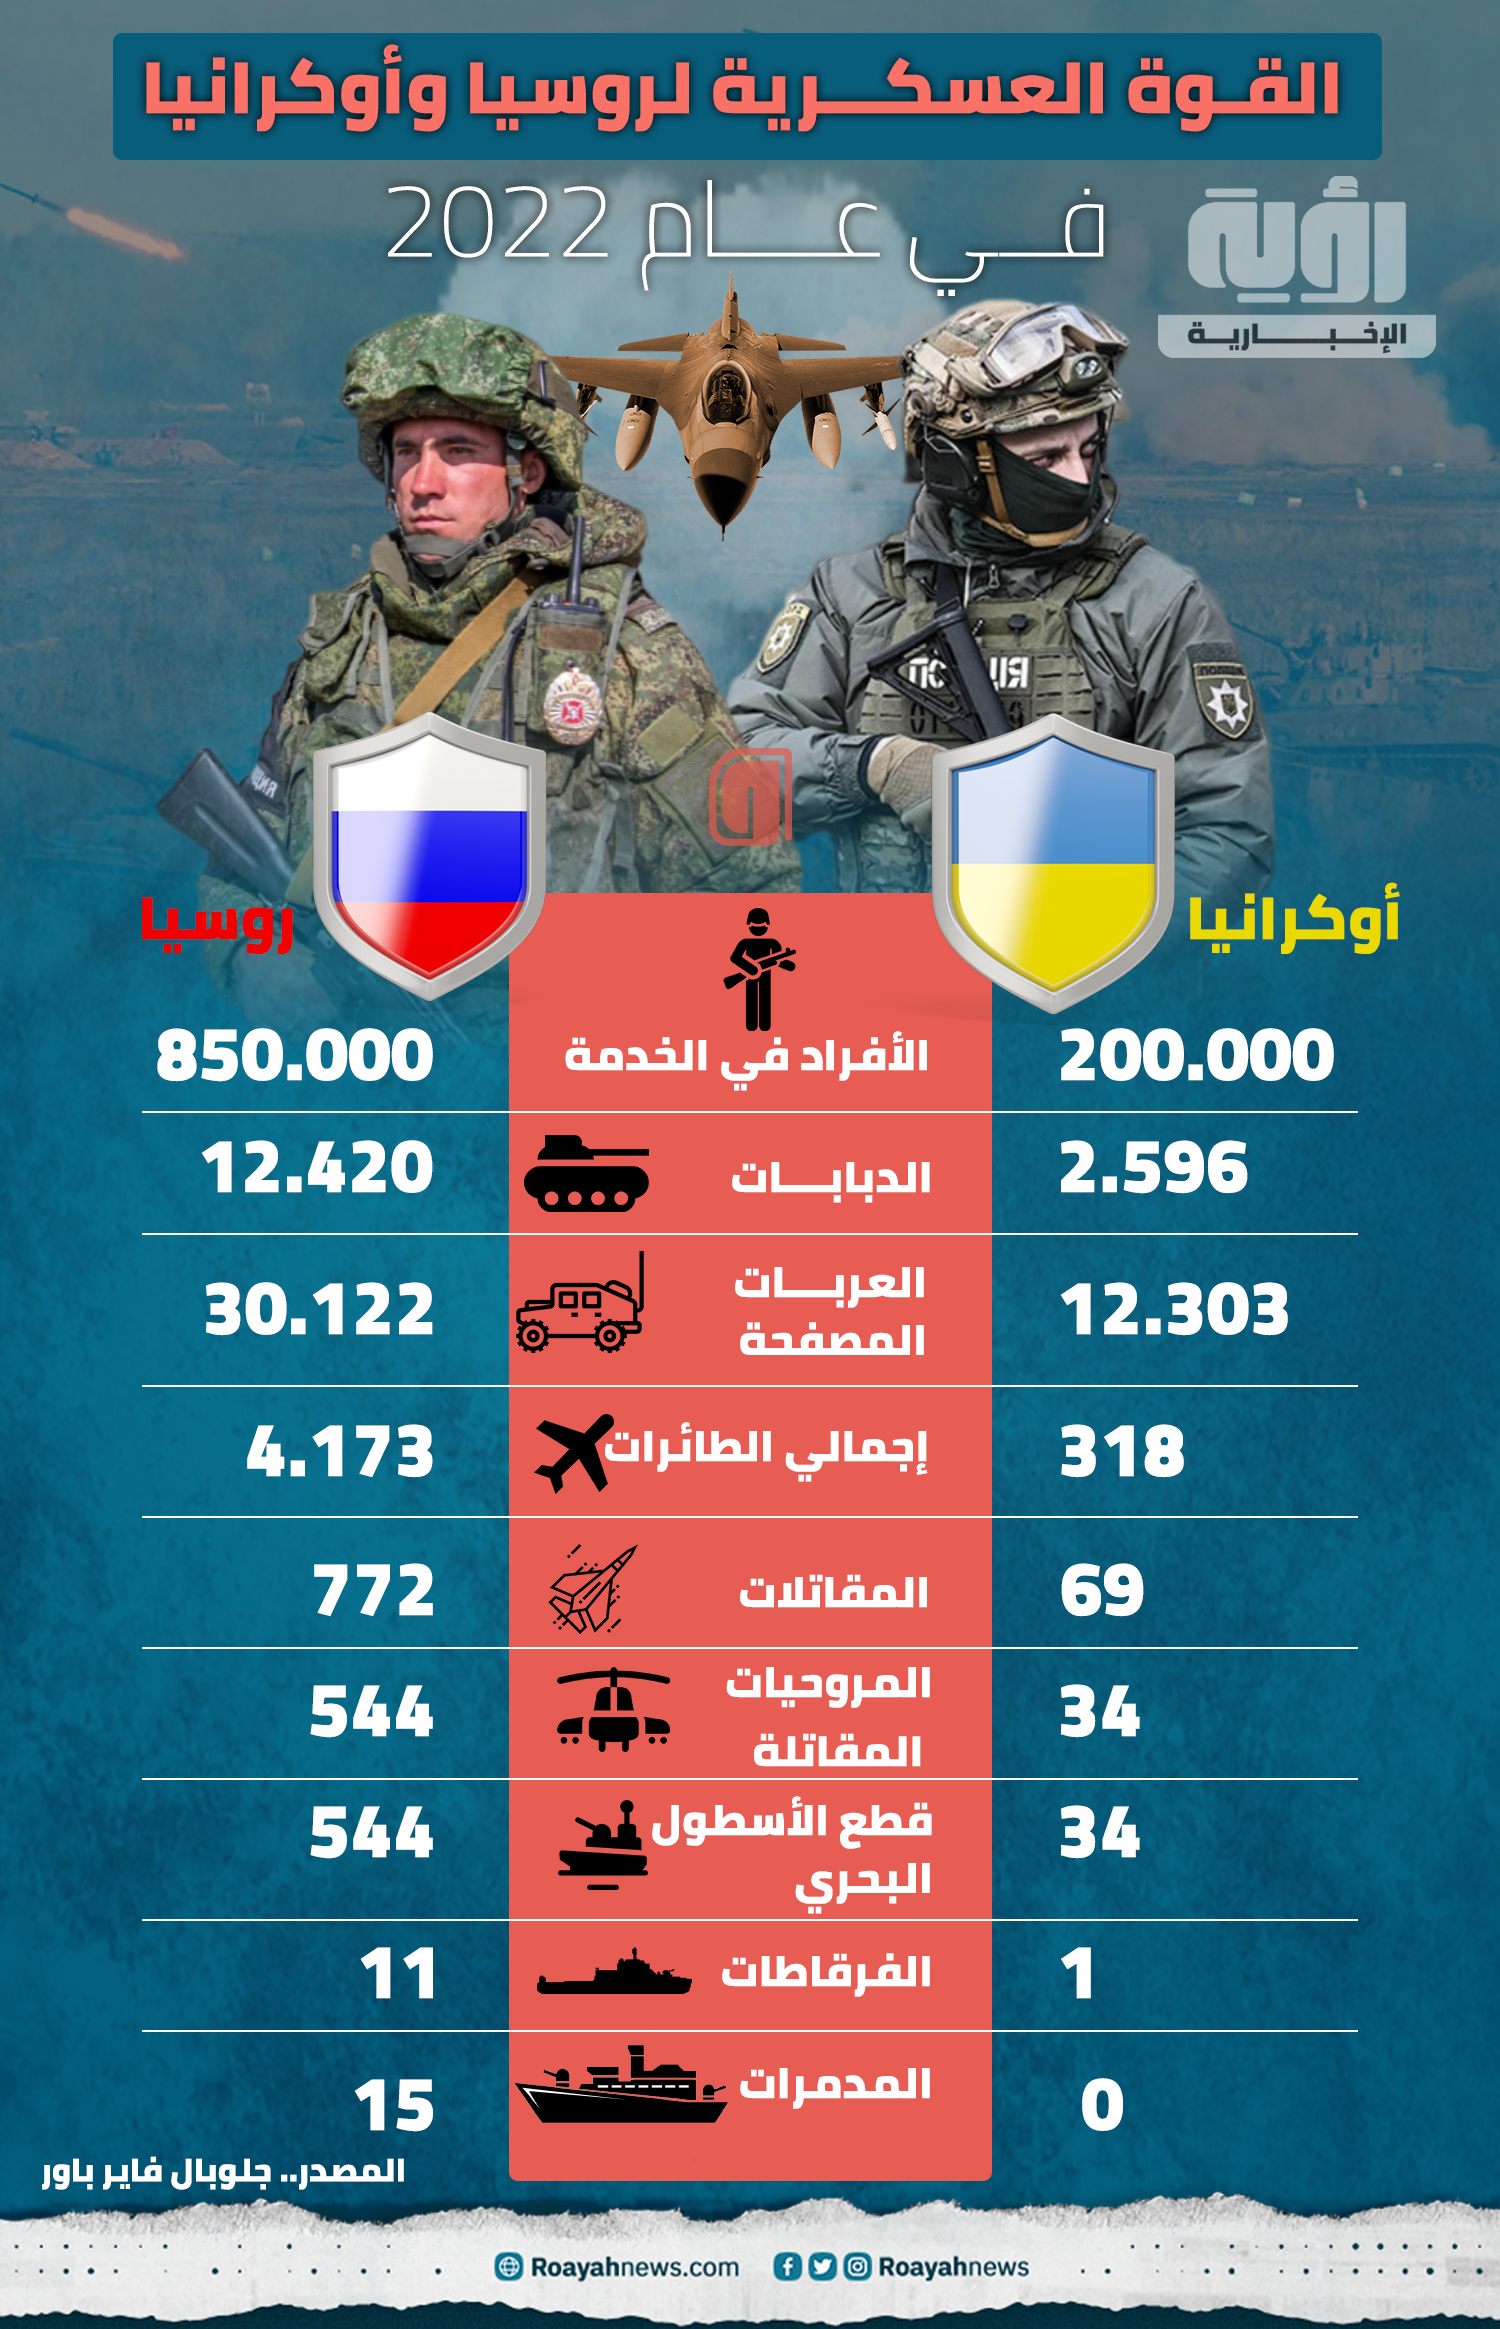 القوة العسكرية لروسيا وأوكرانيا في عام 2022